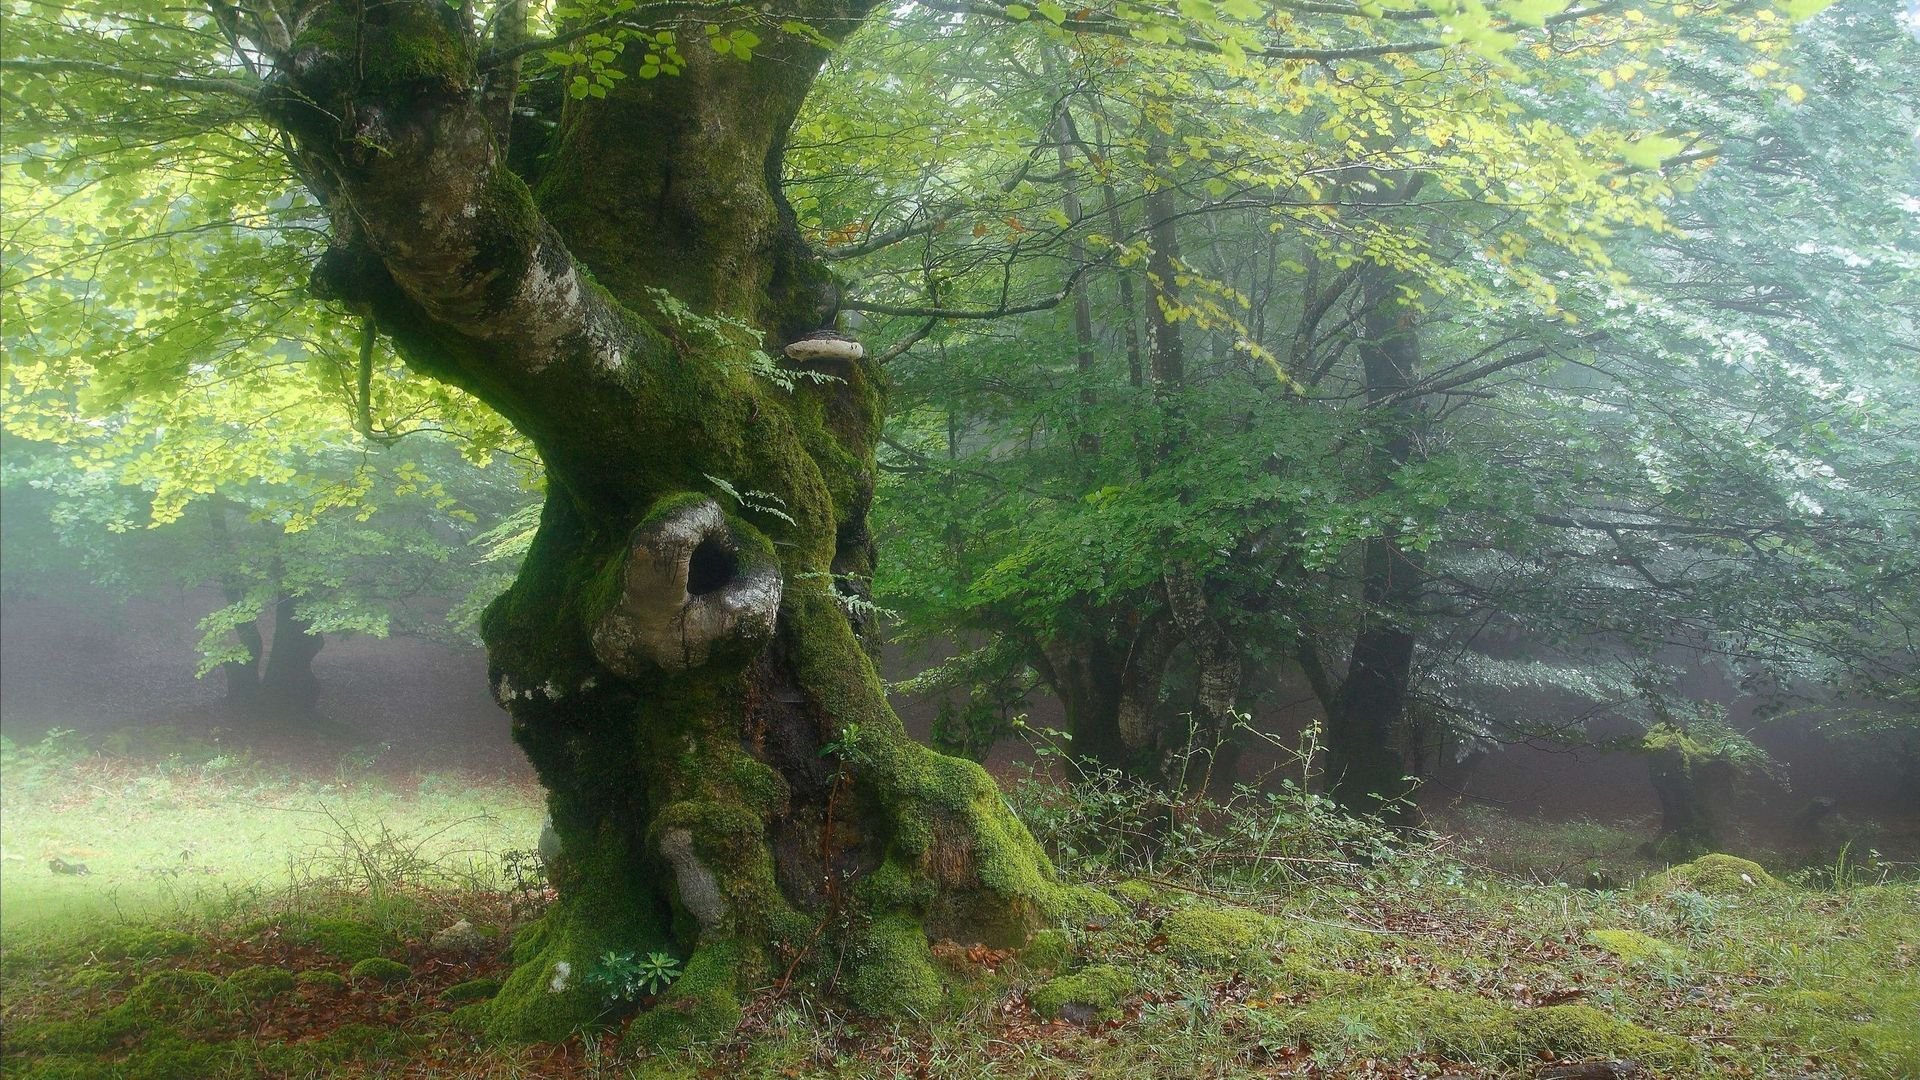 Среди густых деревьев. Шервудский лес в Англии. Лесная опушка дремучего леса. Bosco delle Querce (дубовый лес). Беловежская пуща деревья.